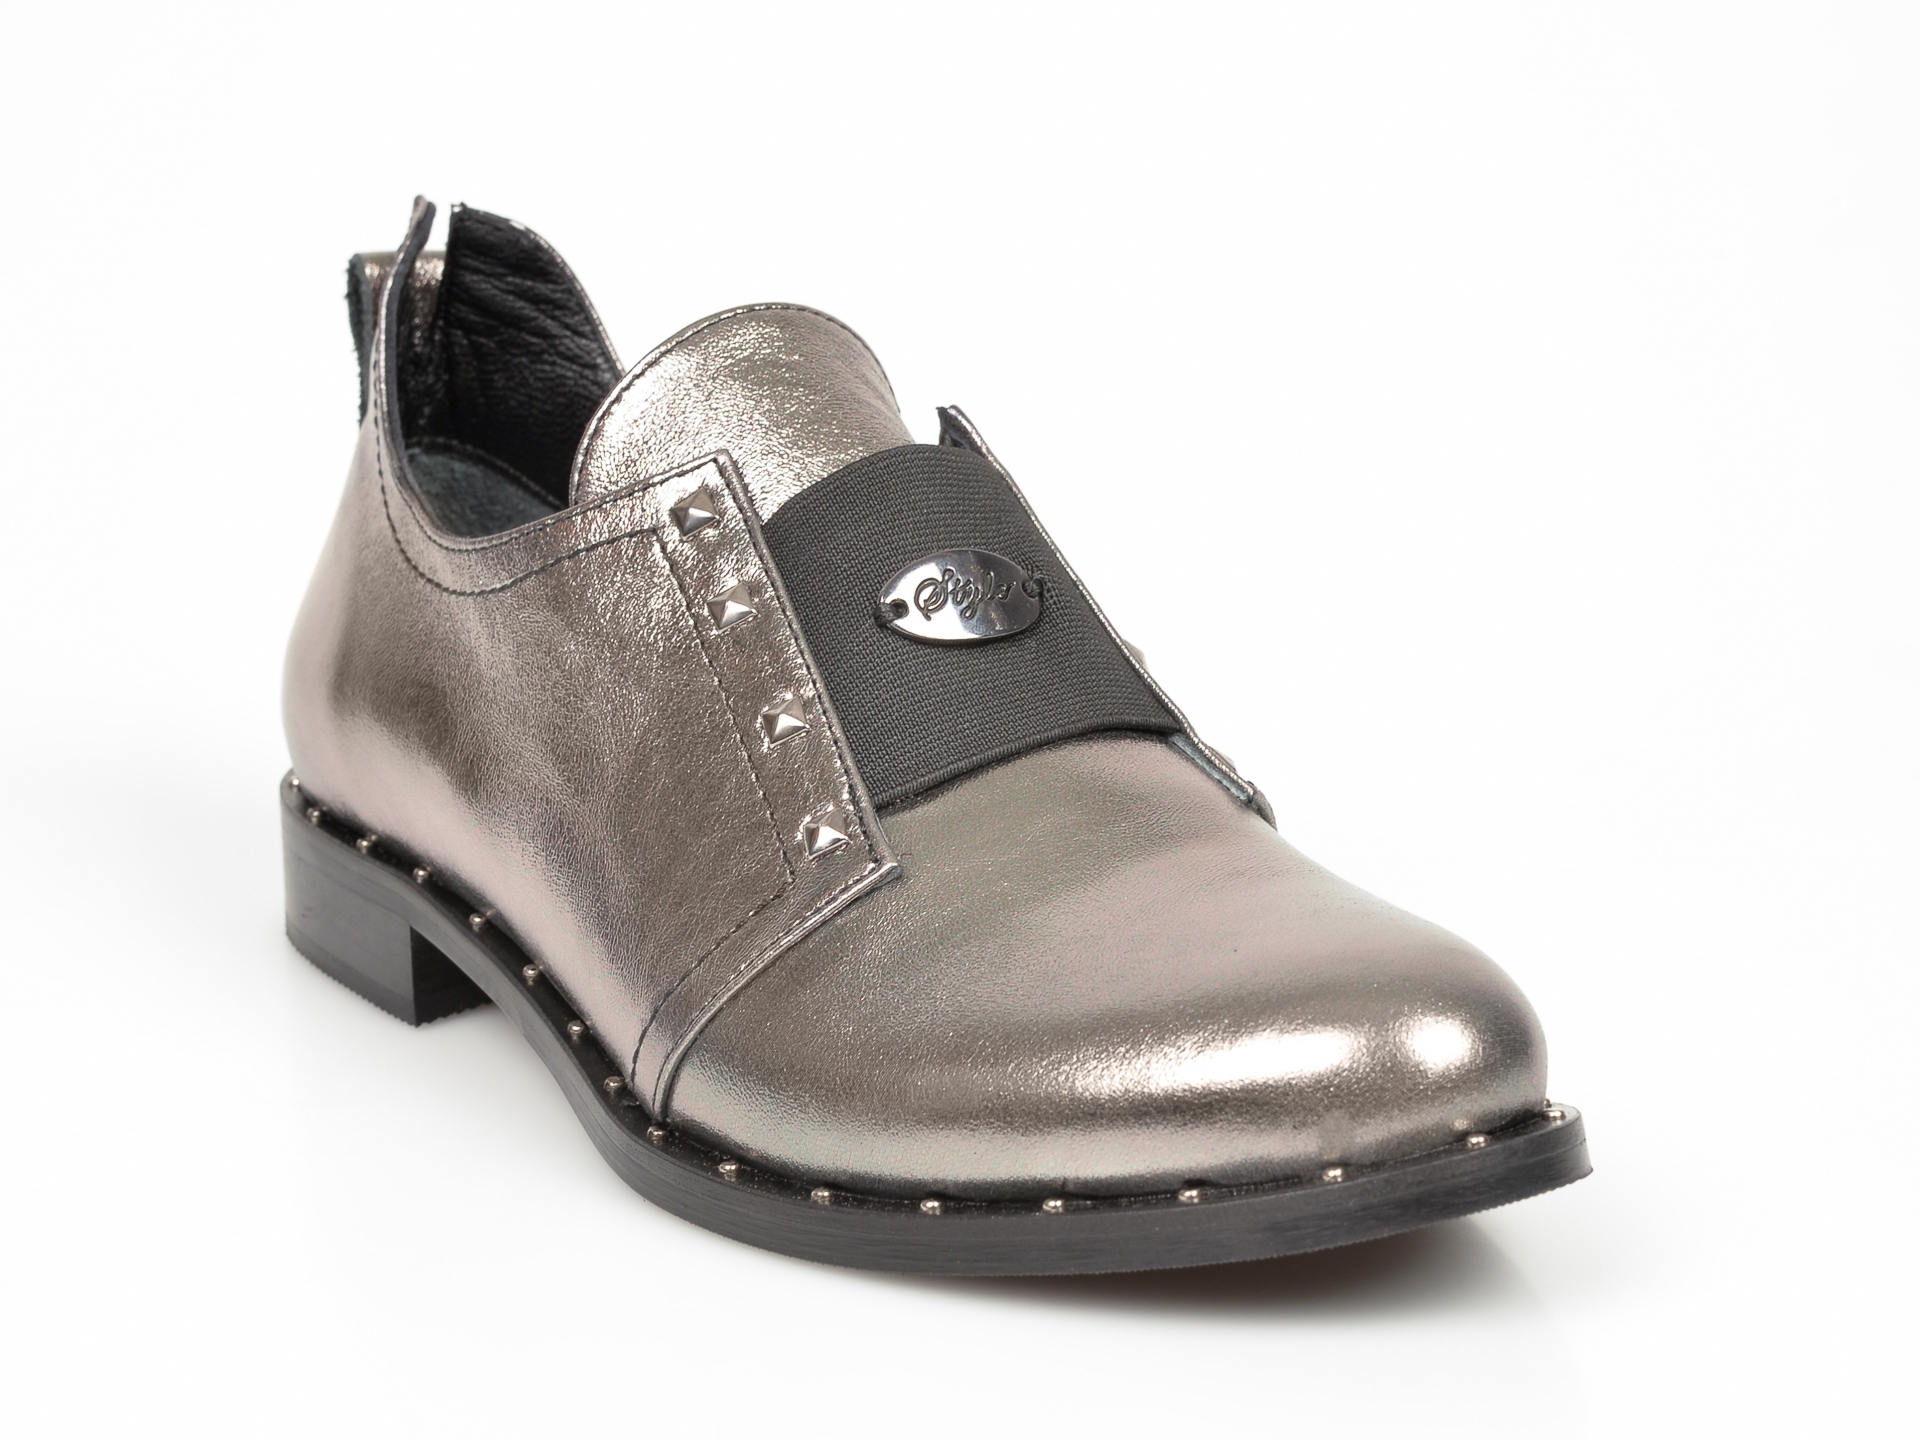 Pantofi FLAVIA PASSINI argintii, Ts06, din piele naturala